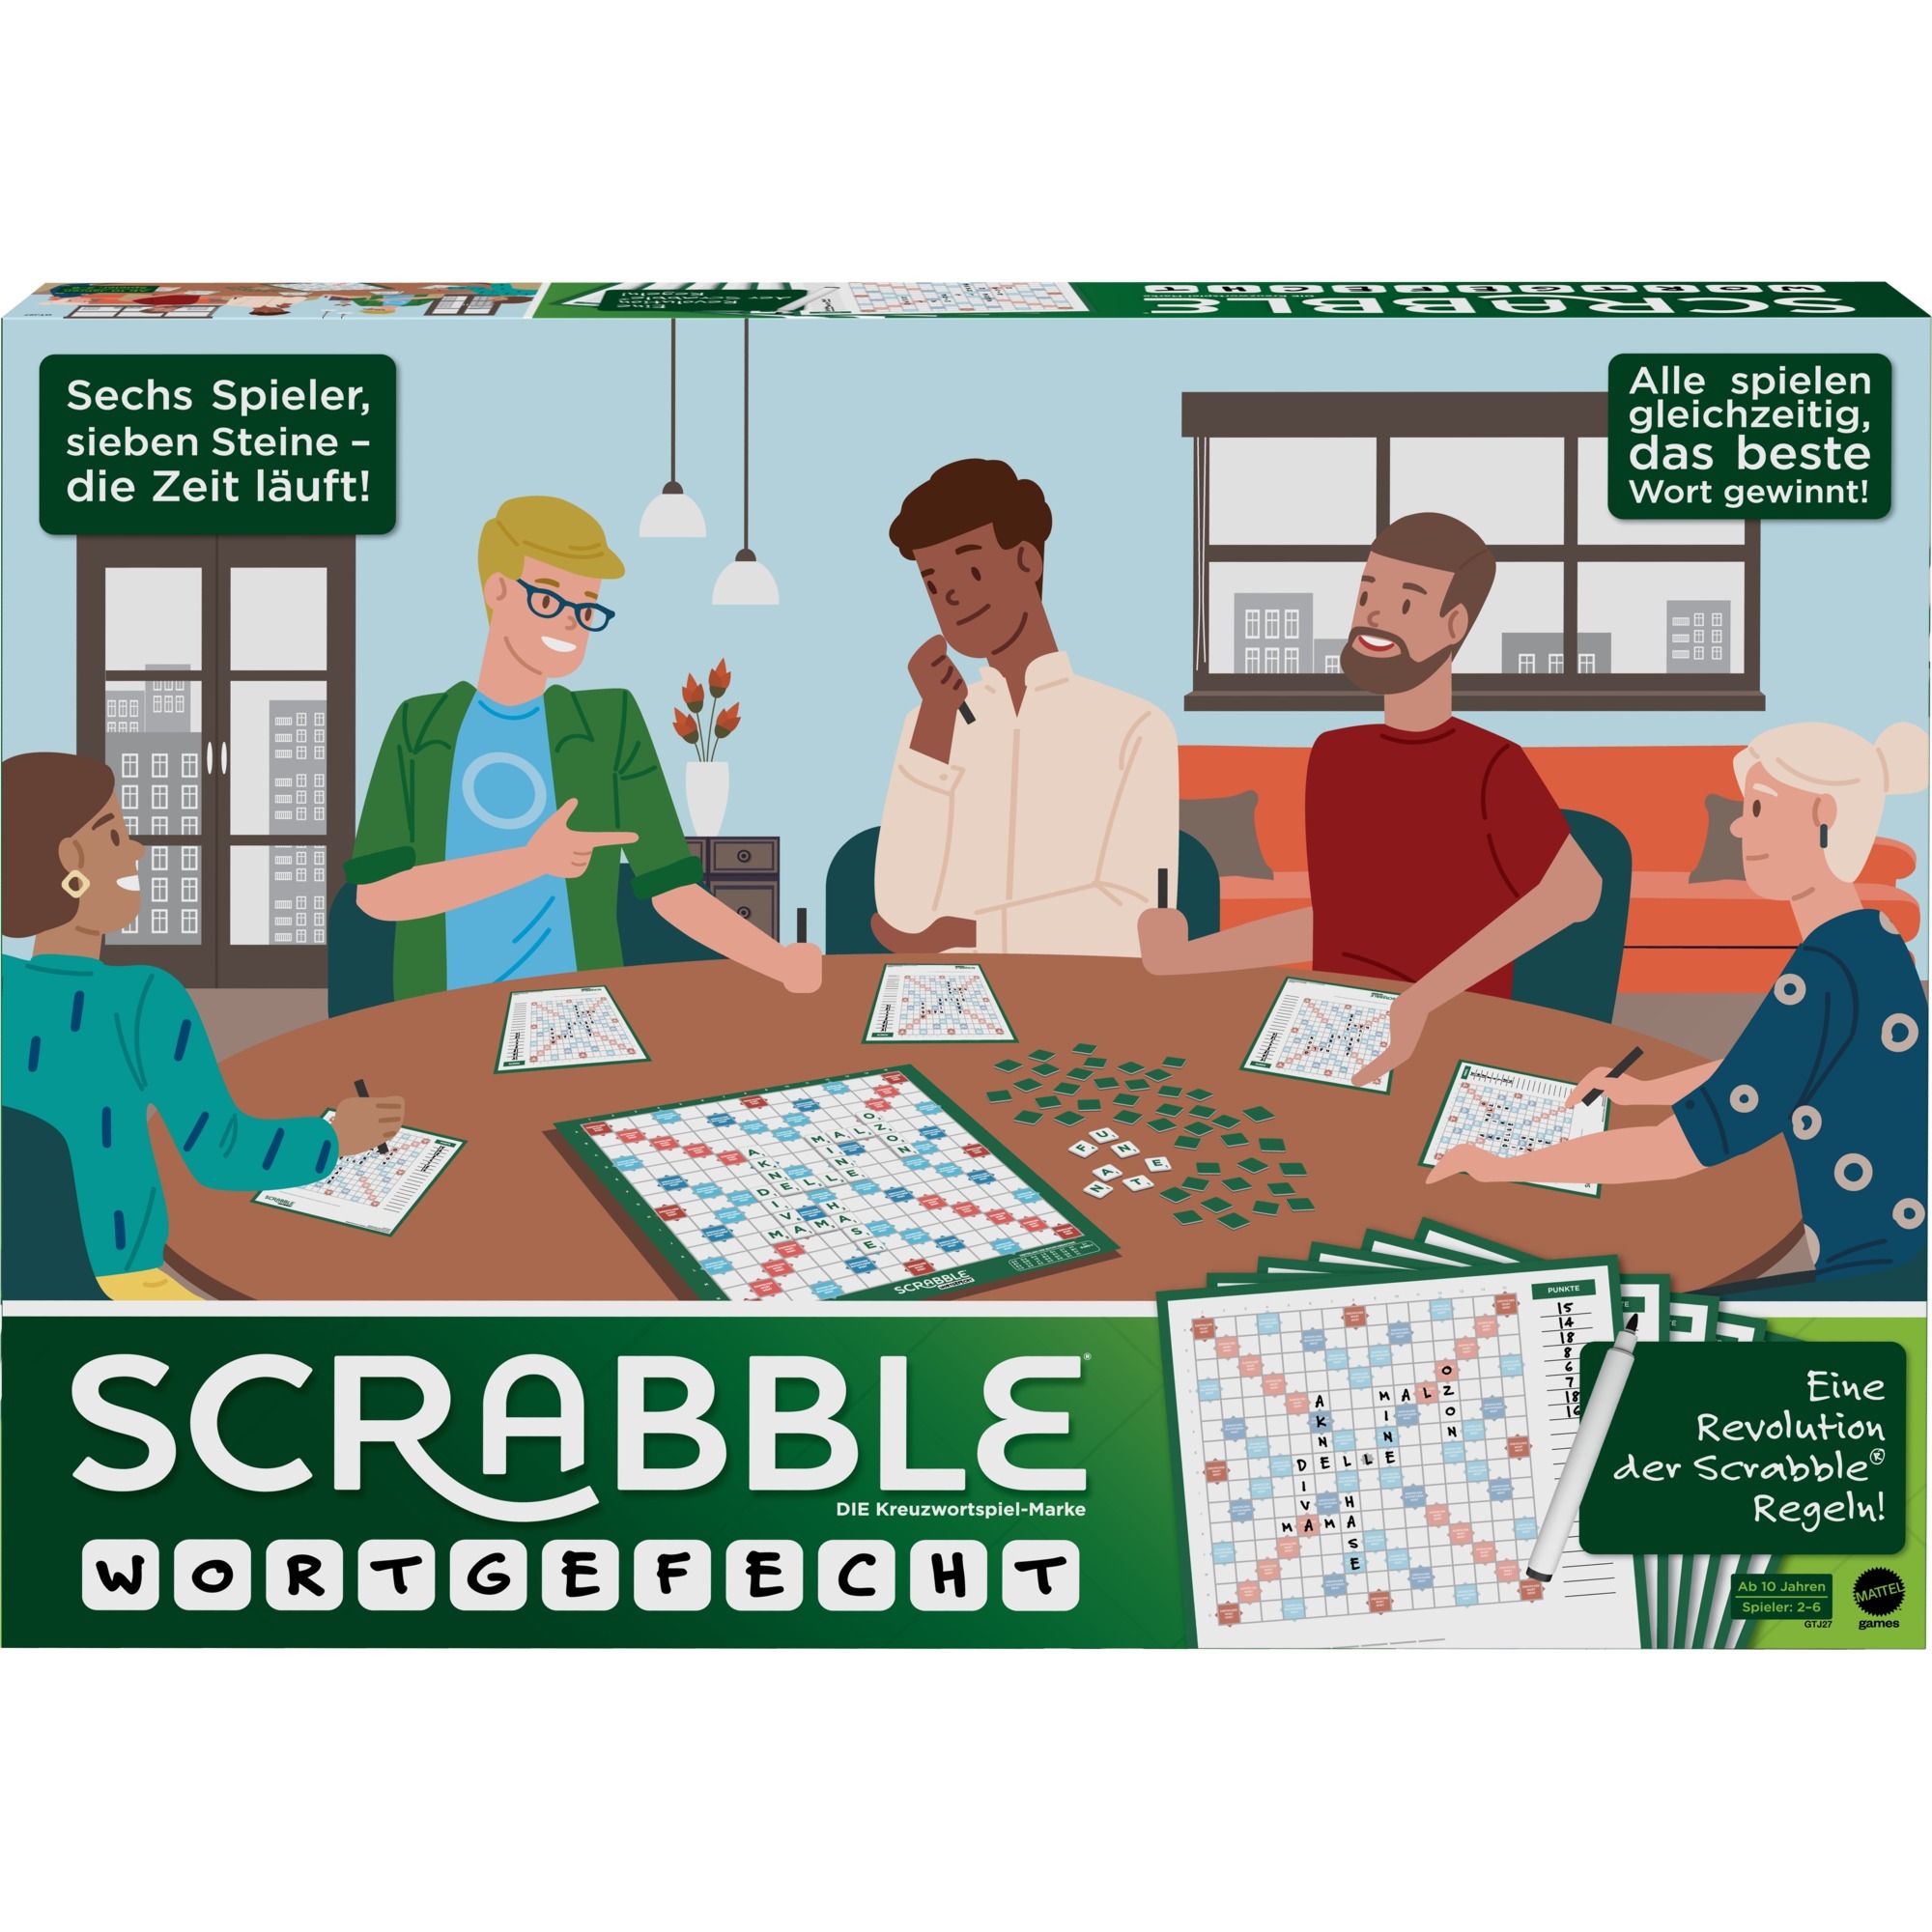 Image of Alternate - Scrabble Wortgefecht, Brettspiel online einkaufen bei Alternate